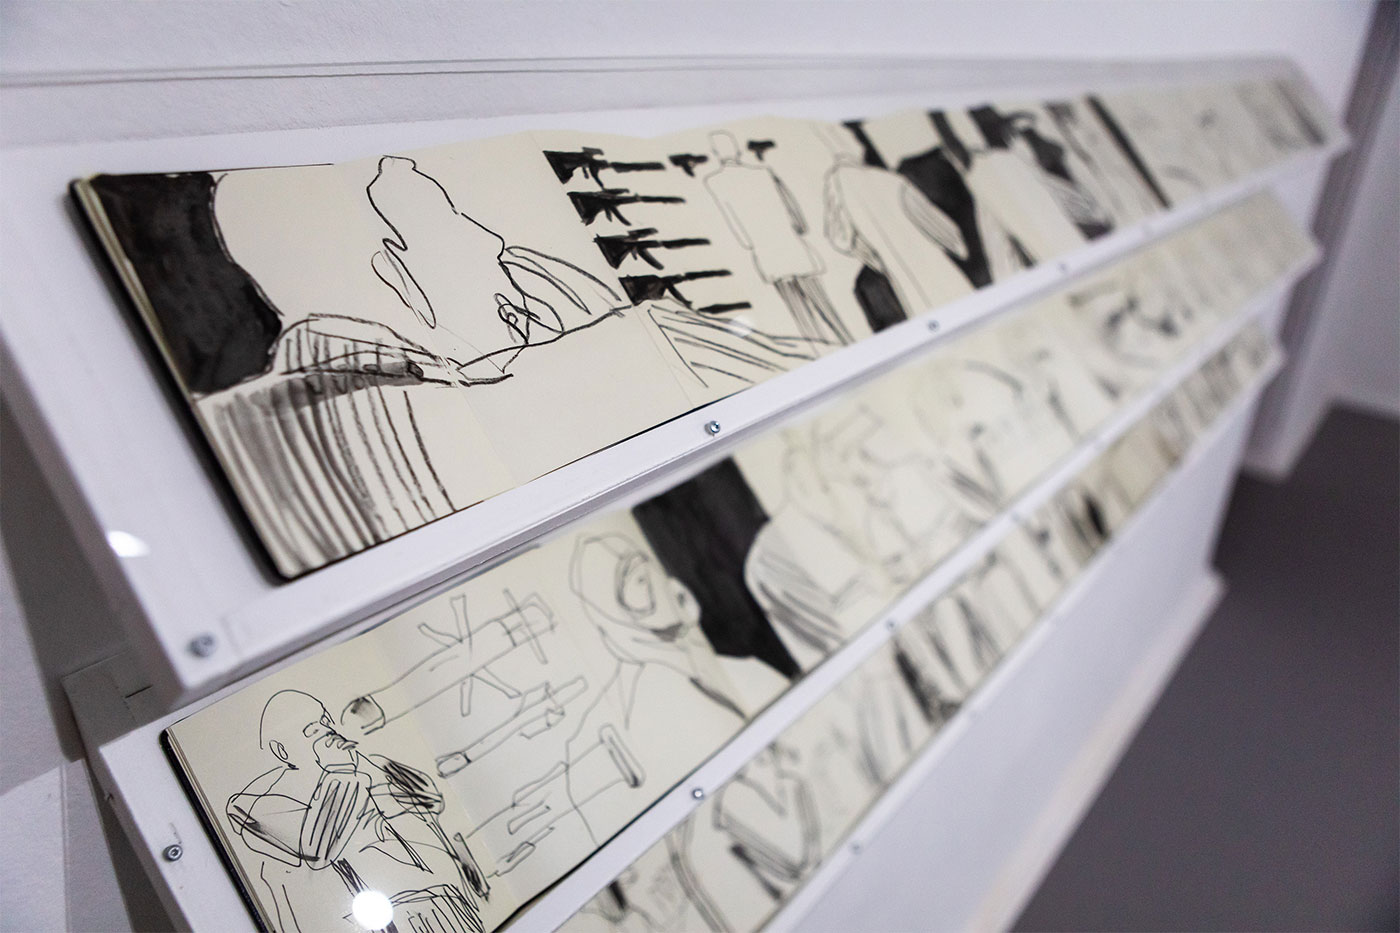 Jill Gibbon »Installation of sketchbooks drawn undercover at arms fairs - 2014-2019«, Ausstellungsansicht »Up in Arms«, Kunstraum Kreuzberg/Bethanien 2019 (Foto: Julian van Dieken)